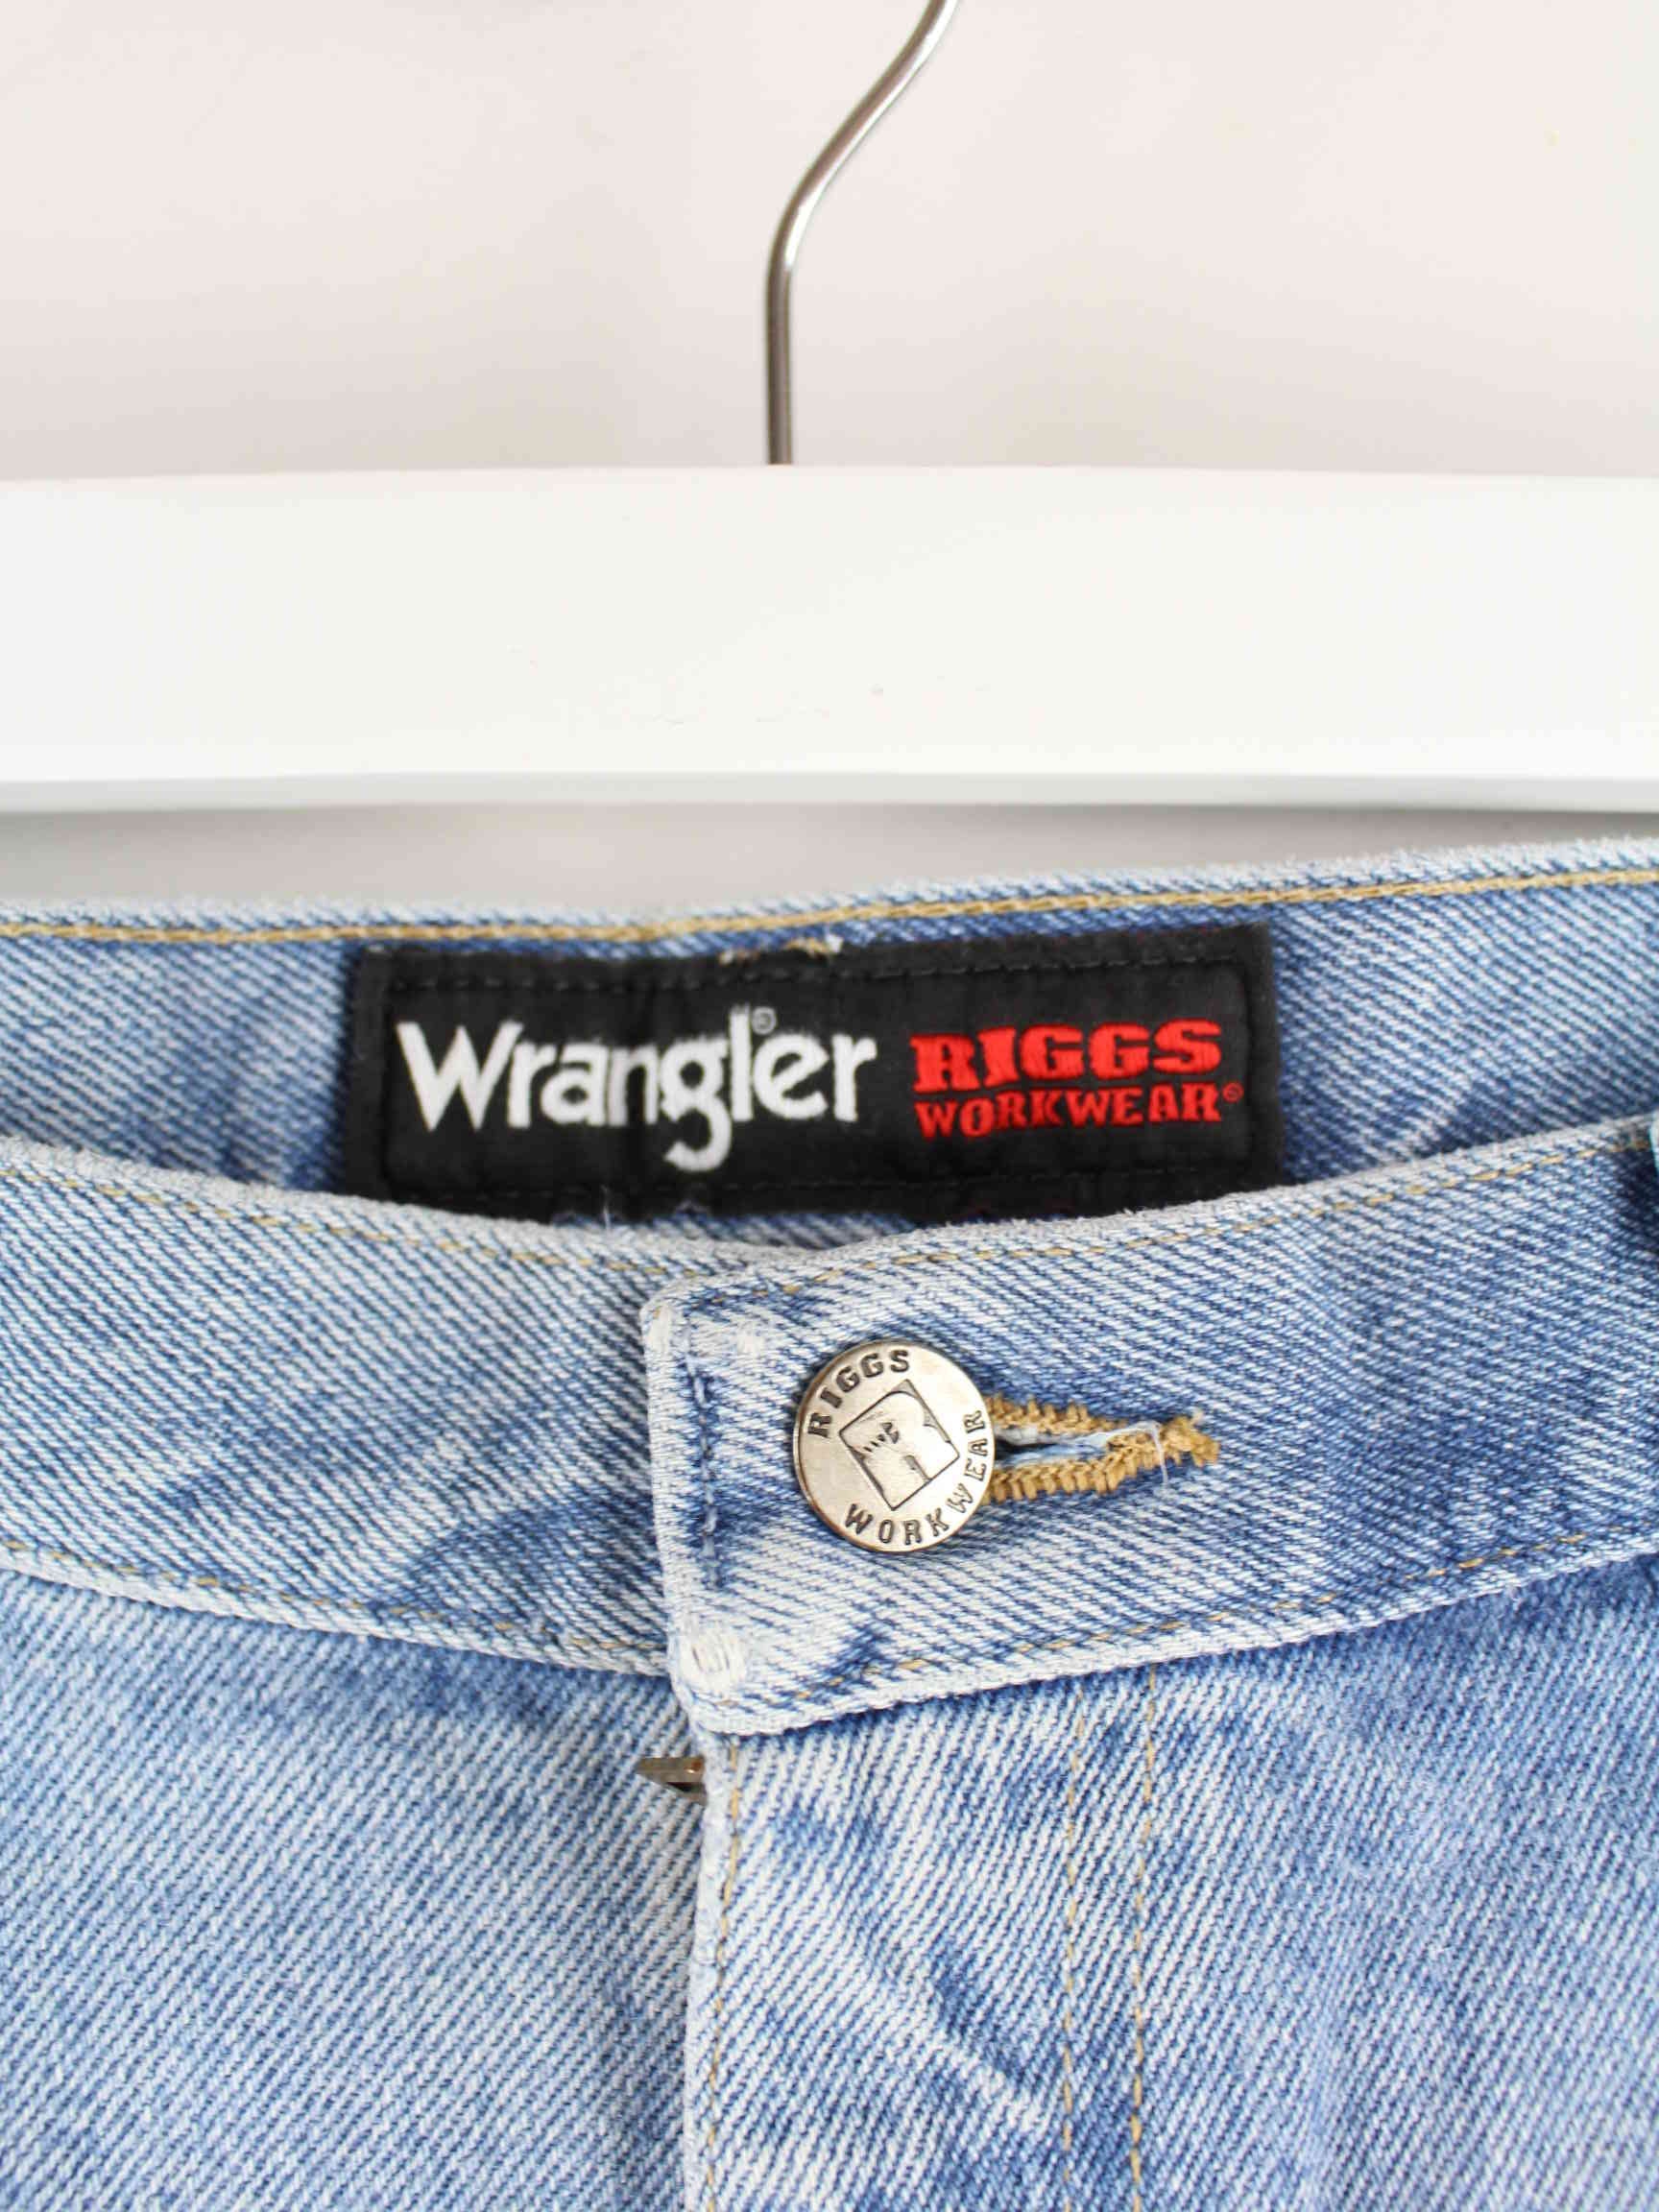 Wrangler Riggs Workwear Carpenter Shorts Blau  (detail image 3)